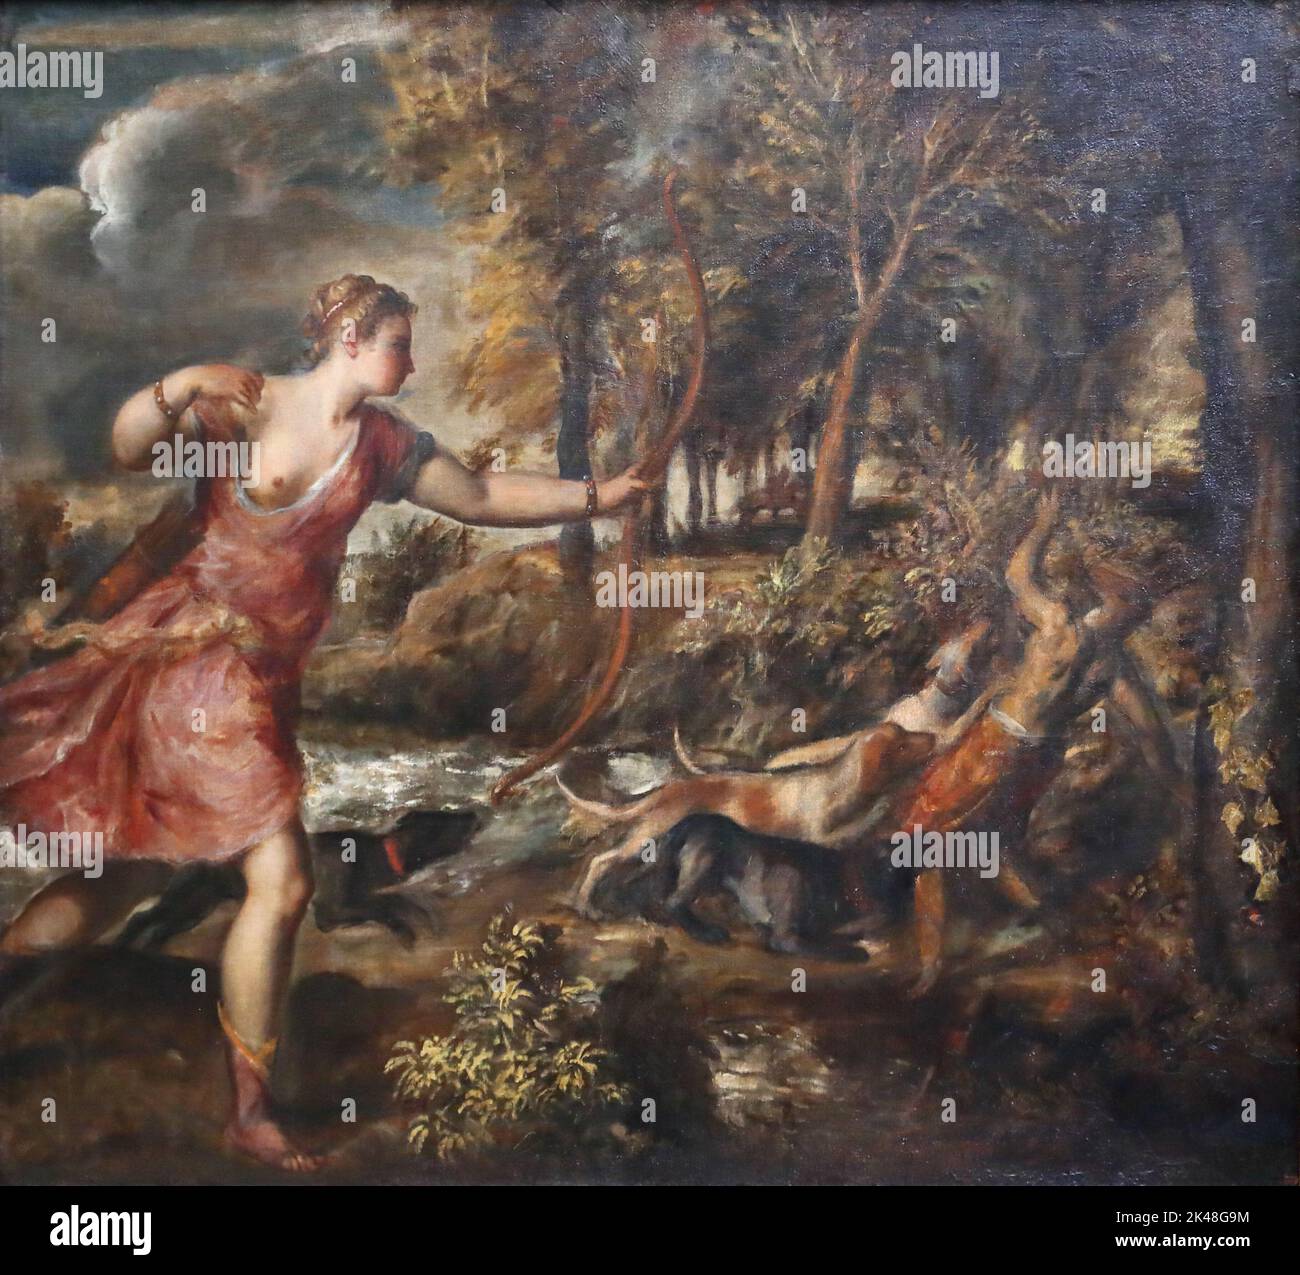 La mort d'Actaeon par le peintre italien de la Renaissance Titien à la National Gallery, Londres, Royaume-Uni Banque D'Images